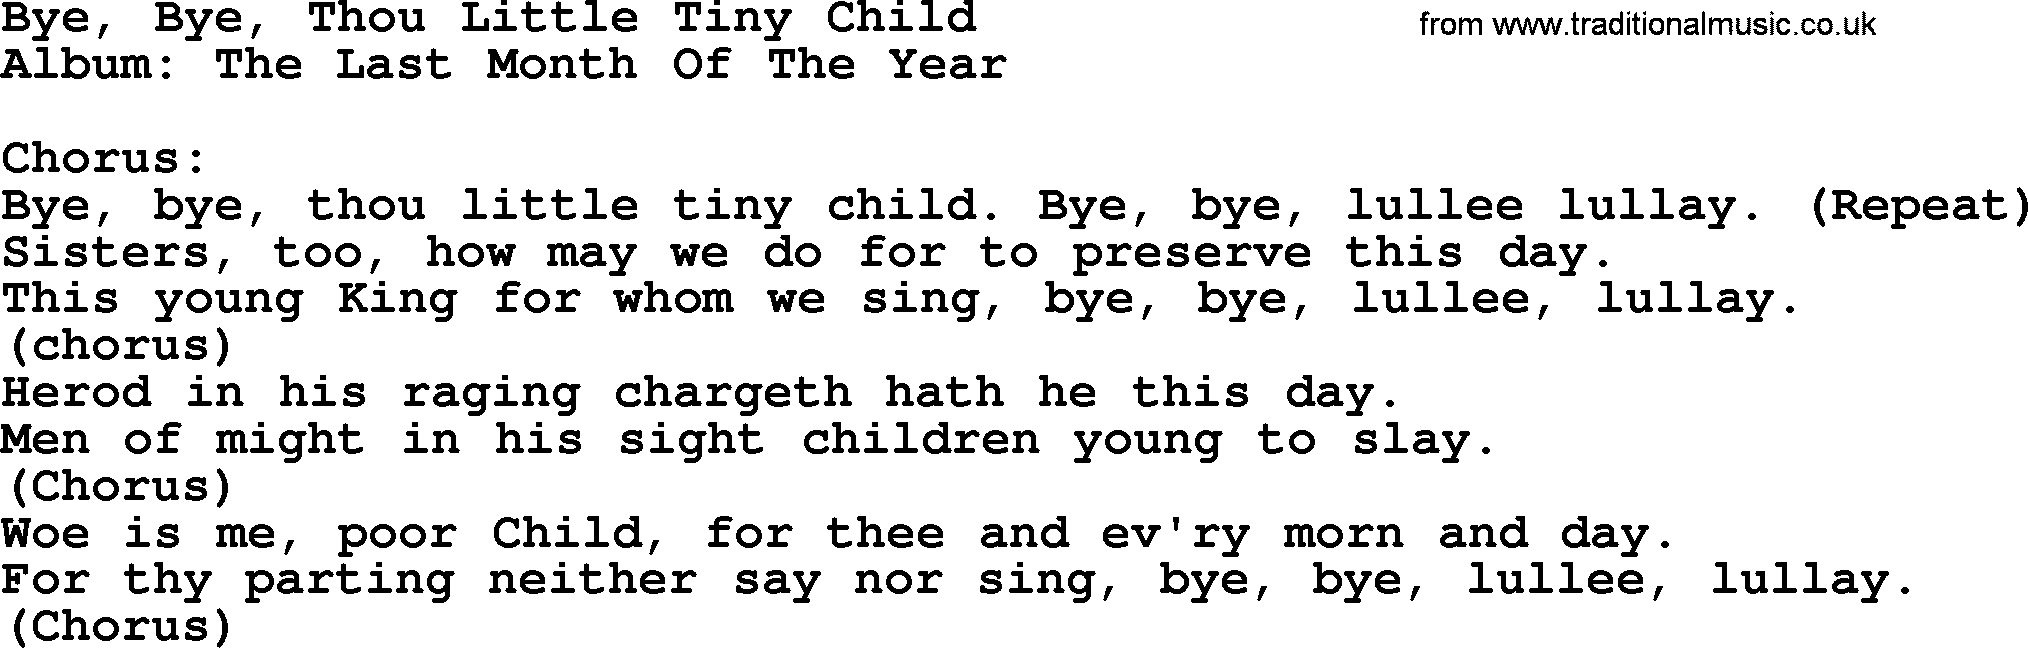 Kingston Trio song Bye, Bye, Thou Little Tiny Child, lyrics